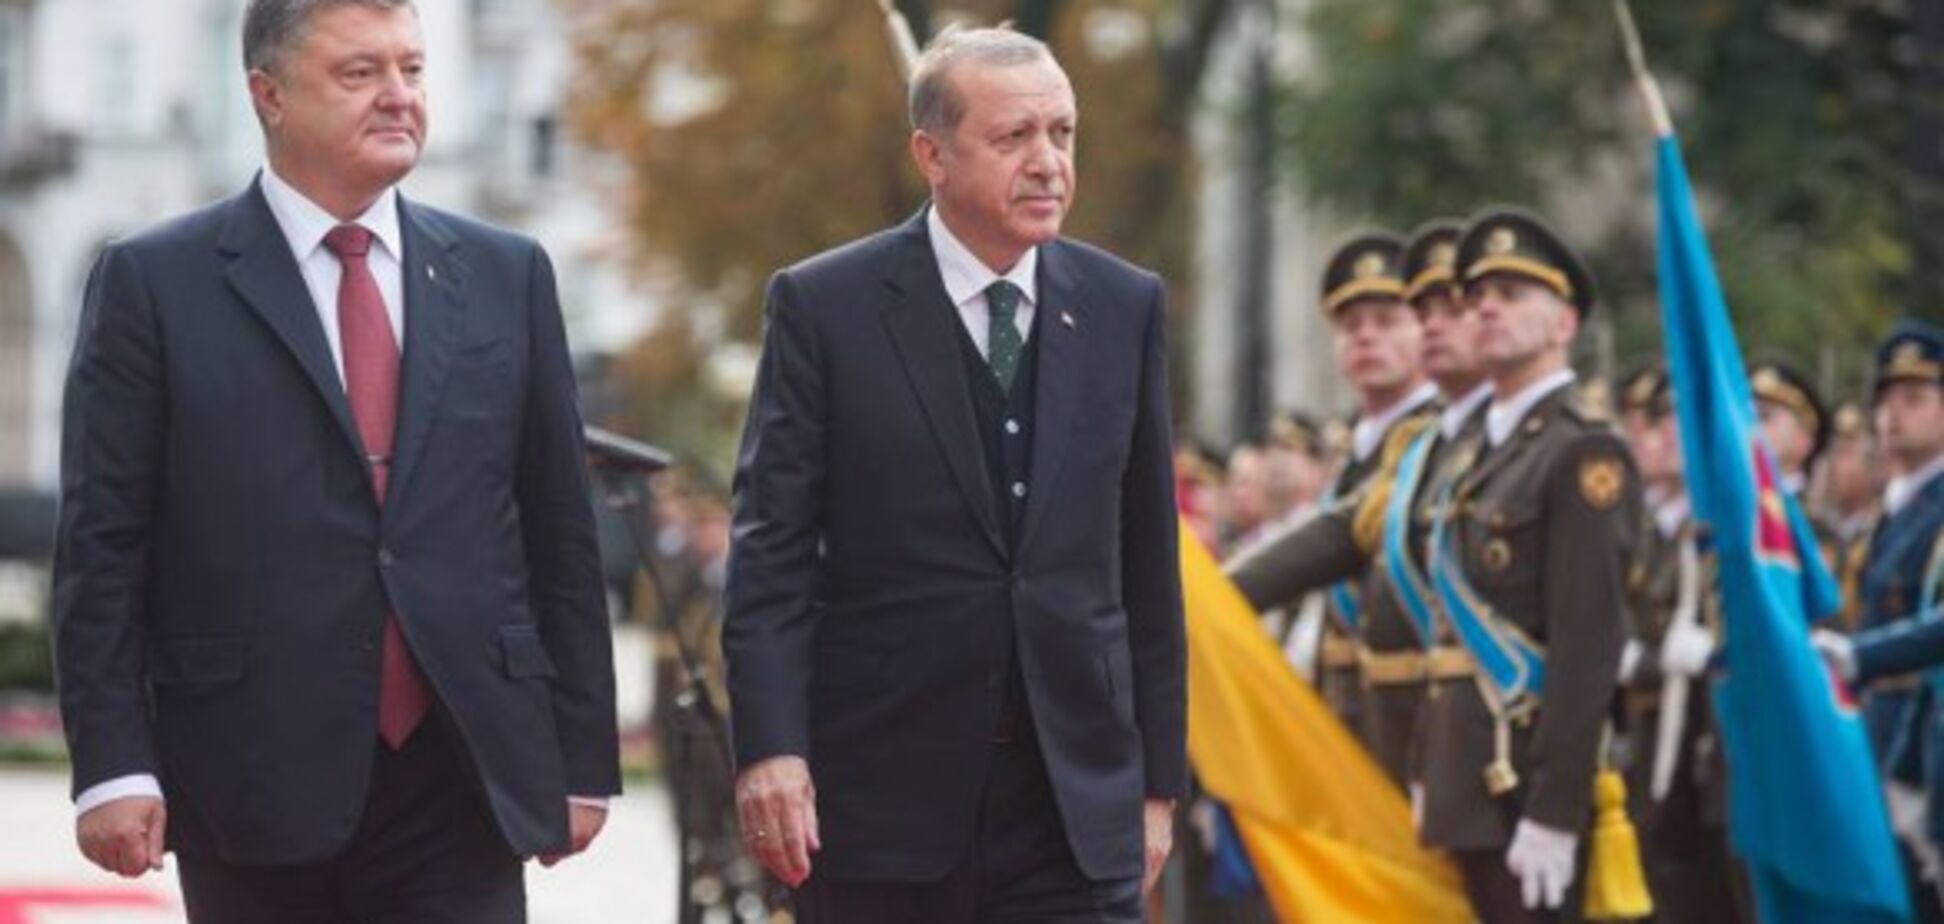 Встреча Порошенко и Эрдогана: стали известны первые результаты